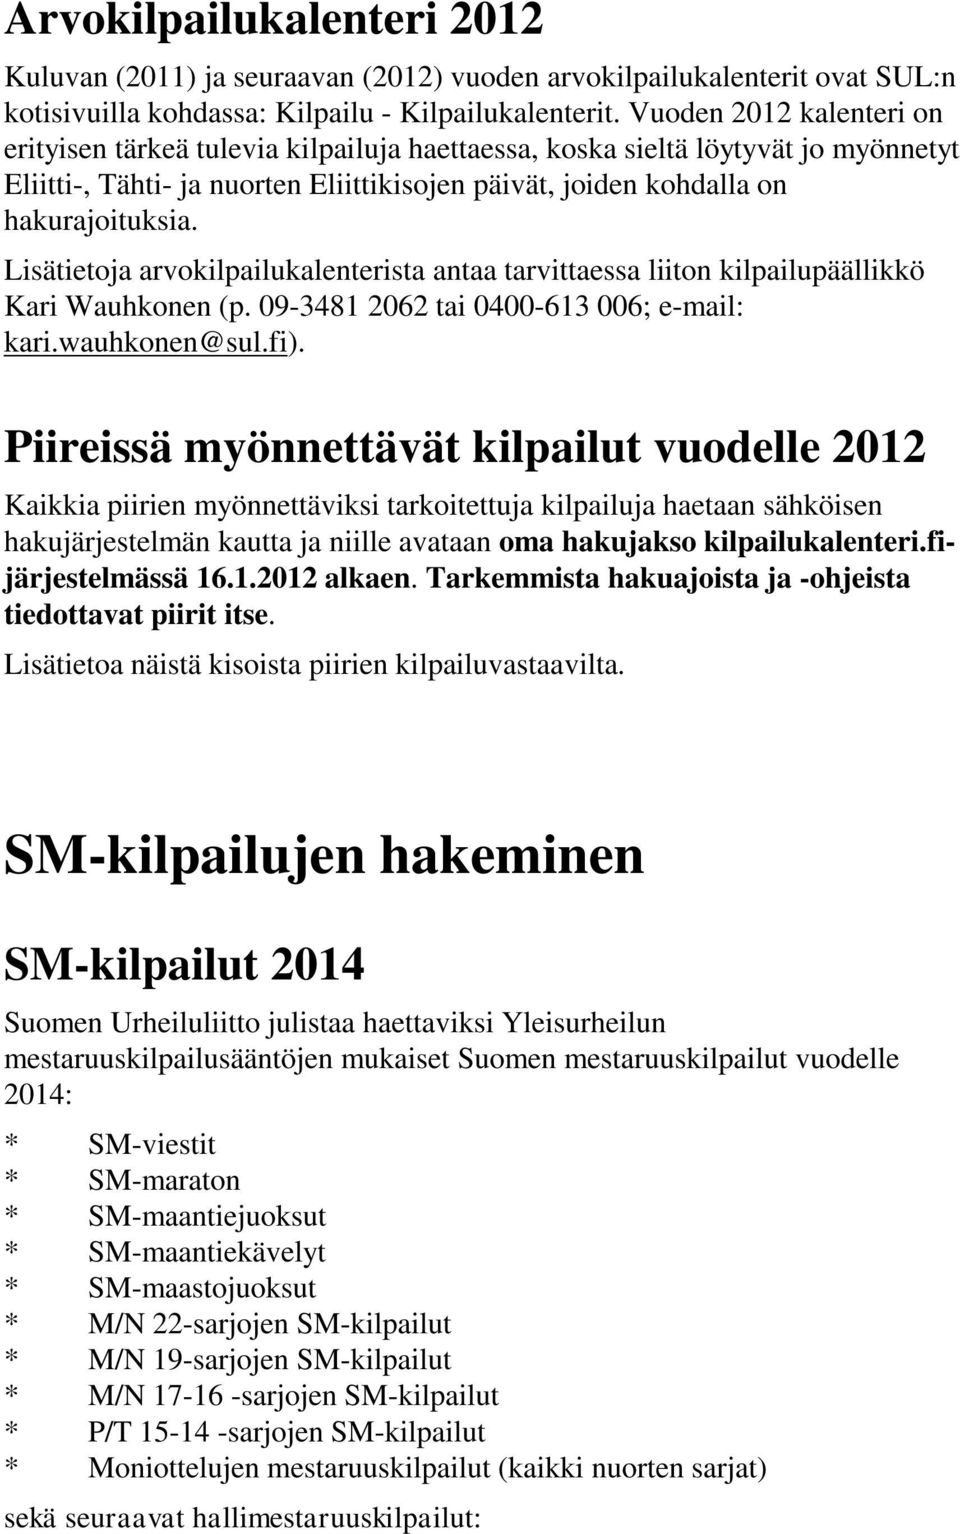 Lisätietoja arvokilpailukalenterista antaa tarvittaessa liiton kilpailupäällikkö Kari Wauhkonen (p. 09-3481 2062 tai 0400-613 006; e-mail: kari.wauhkonen@sul.fi).